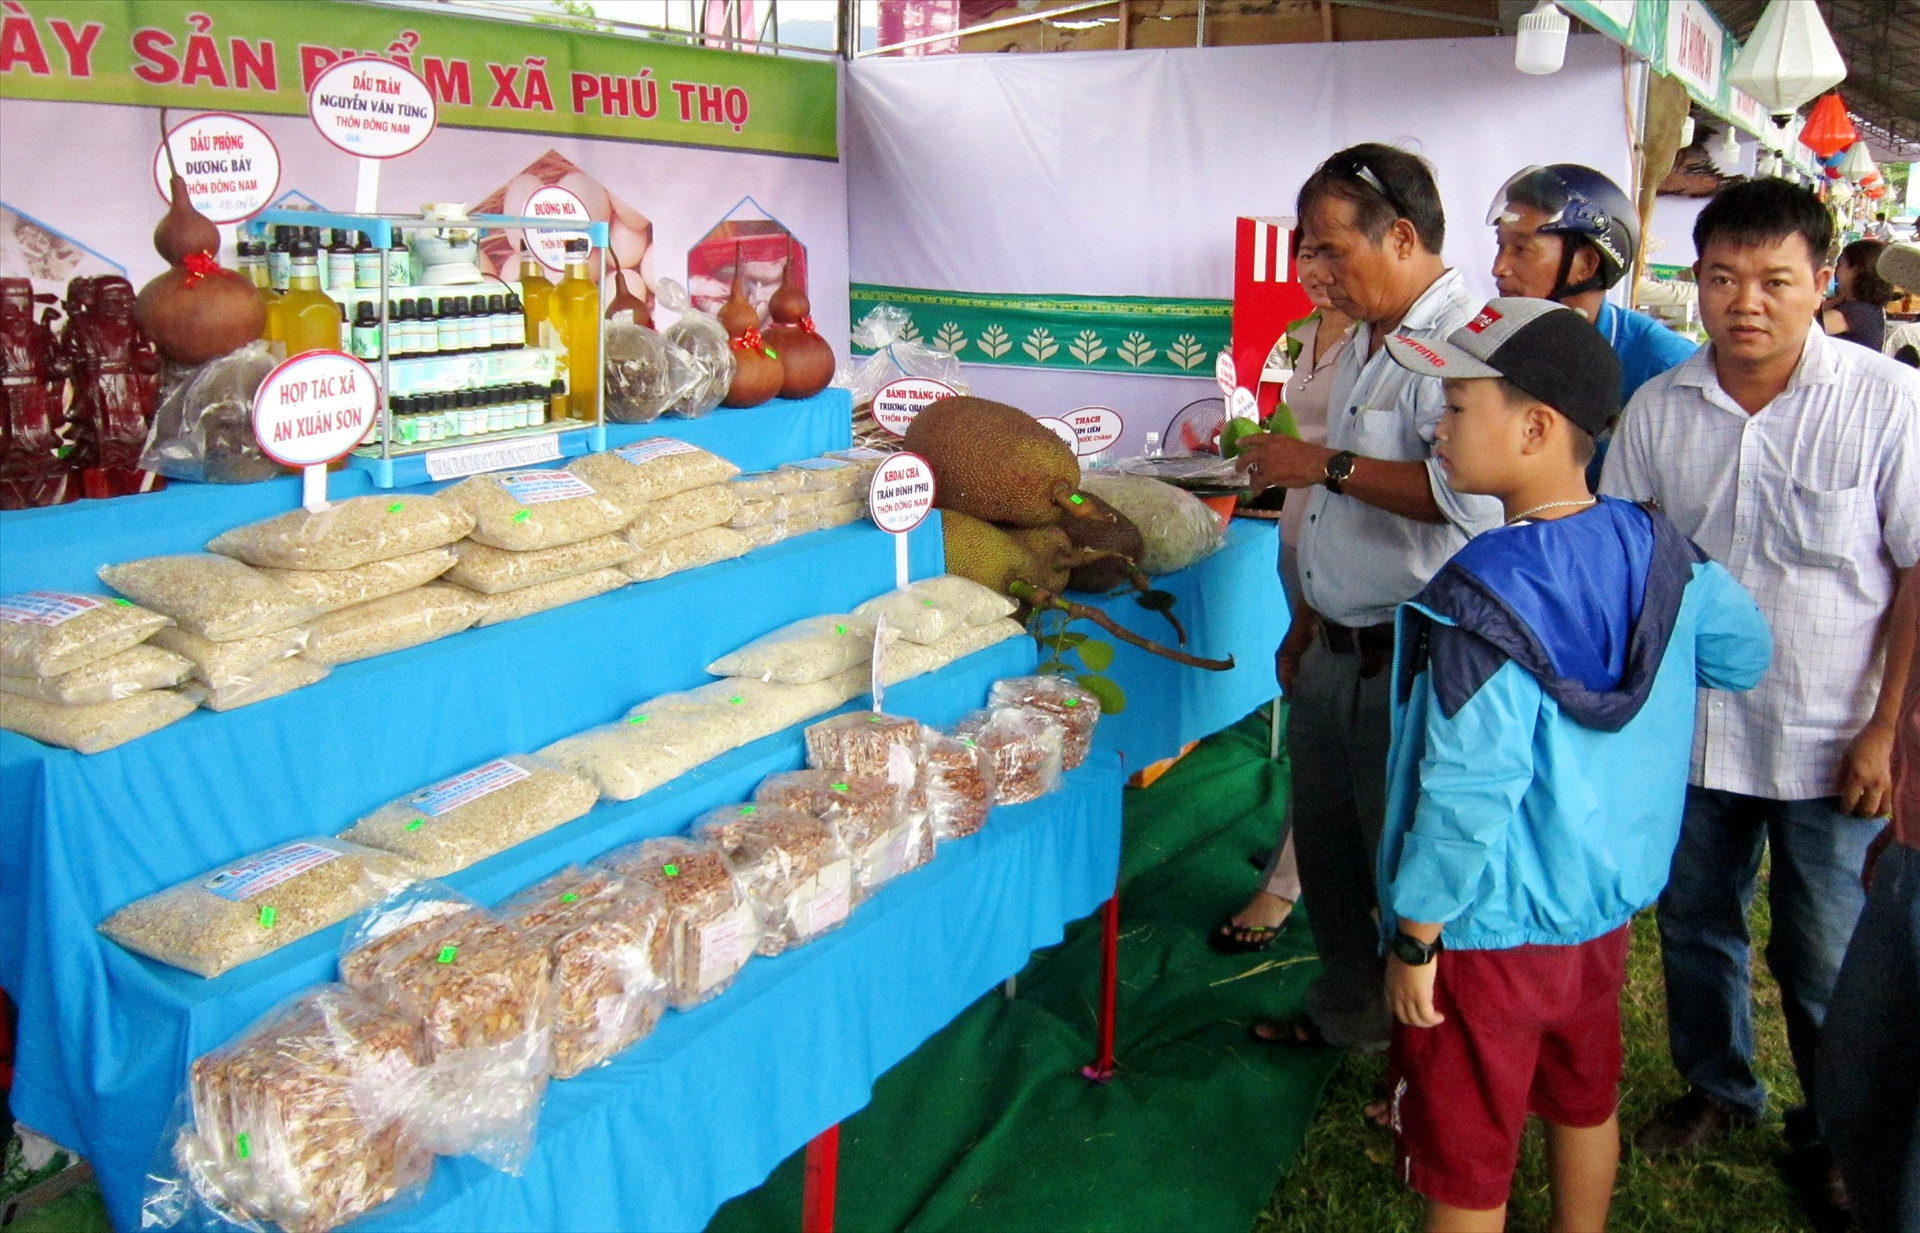 Huyện Quế Sơn luôn tạo điều kiện thuận lợi cho các chủ thể tham gia Chương trình OCOP quảng bá, giới thiệu sản phẩm tại các hội chợ. Ảnh: T.P